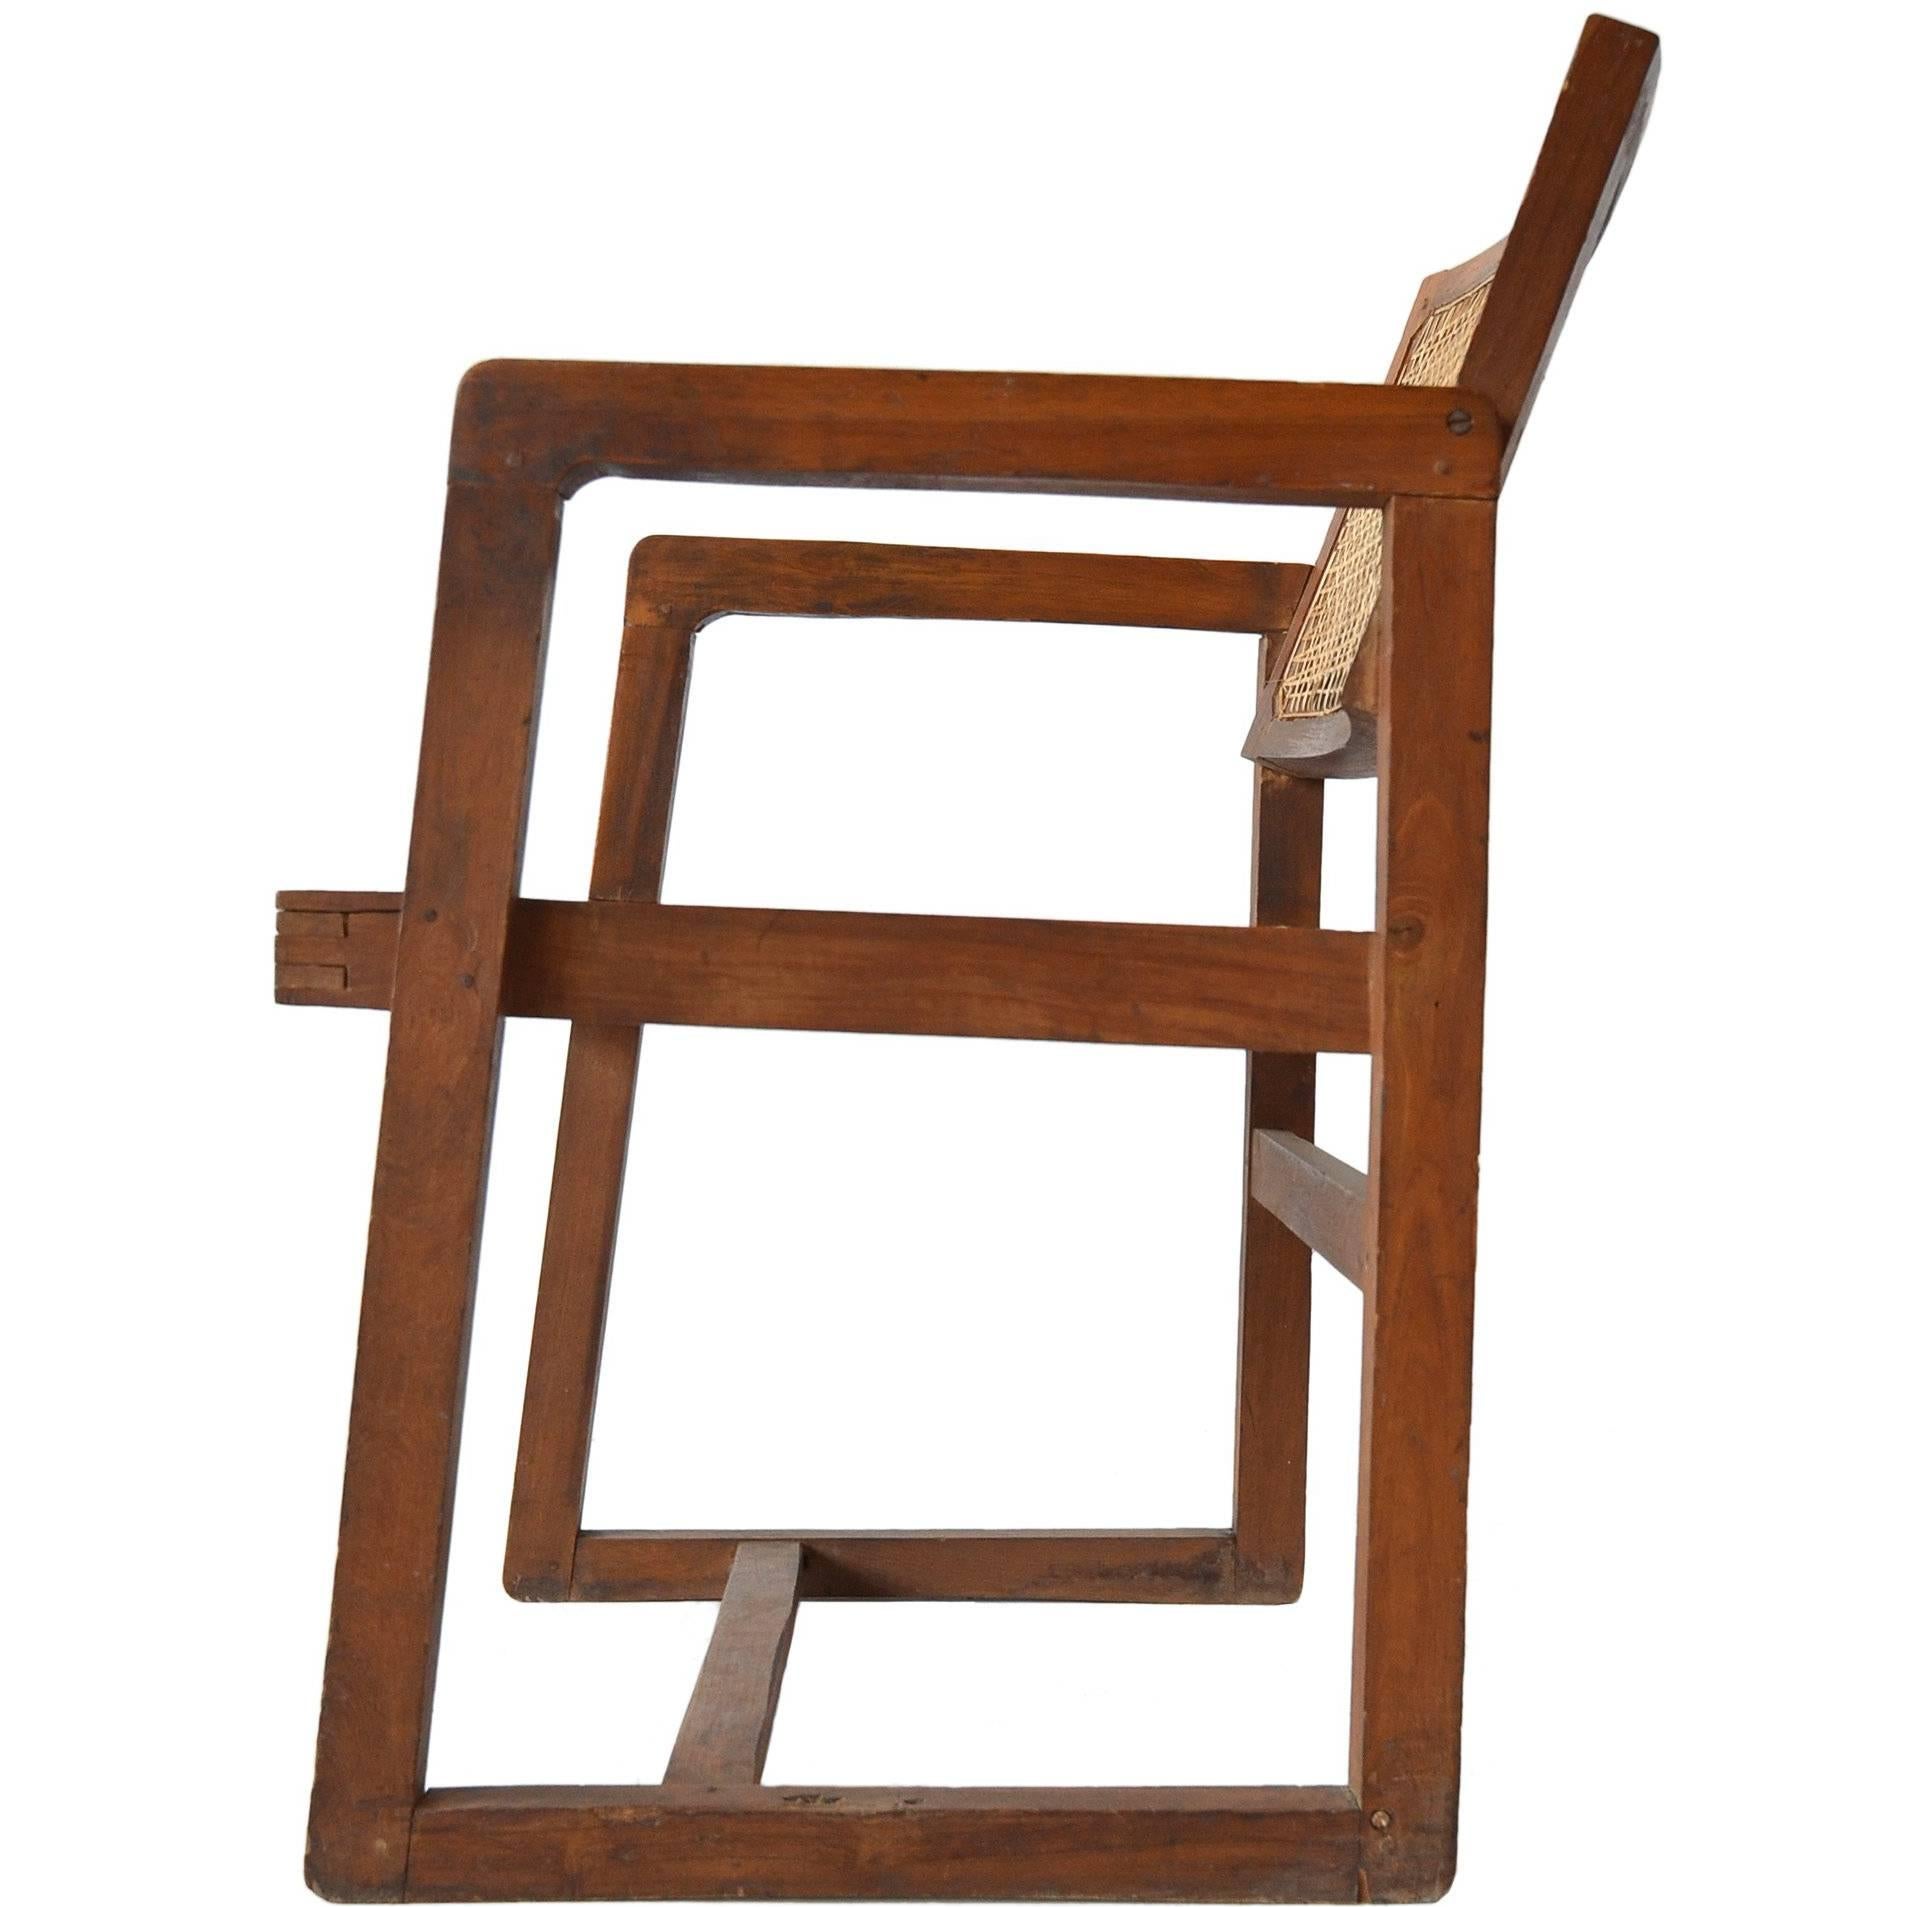 Pierre Jeanneret "Box" Desk Chair in Teak